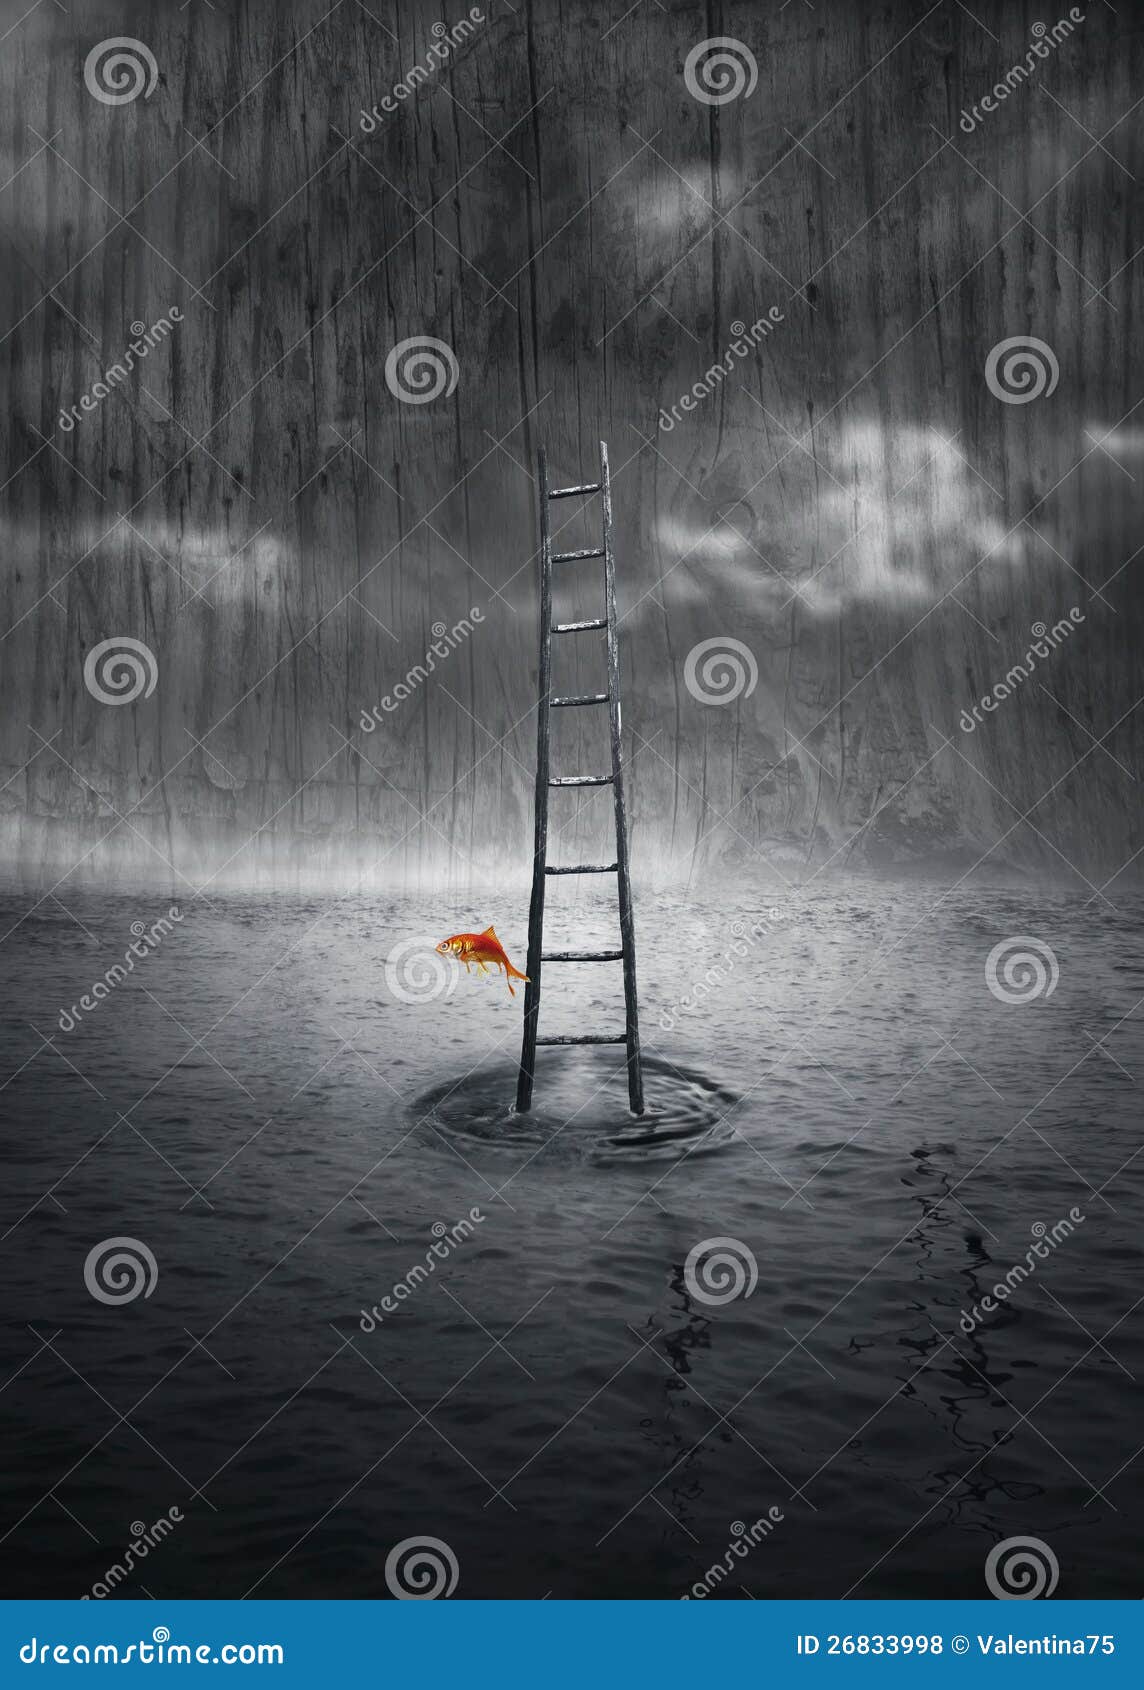 Escale acima. Fundo da fantasia com uma escada de madeira fora da água e um peixe colorido que saltam em um ambiente dramático em preto e branco